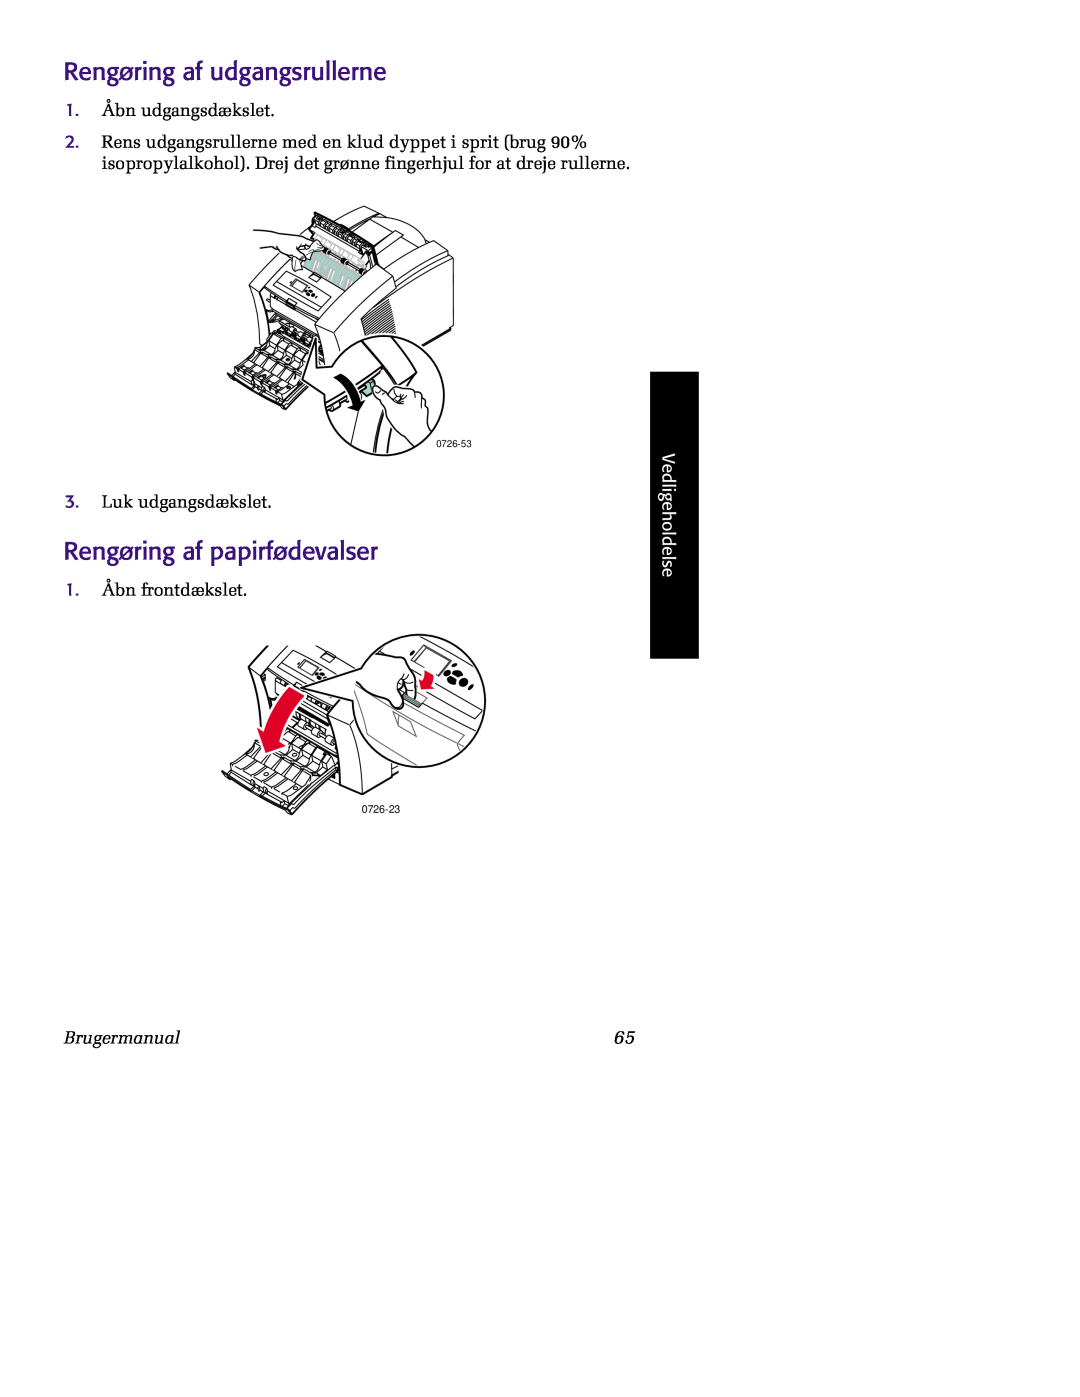 Tektronix 860 Rengøring af udgangsrullerne, Rengøring af papirfødevalser, Vedligeholdelse, Brugermanual, 0726-23, 0726-53 